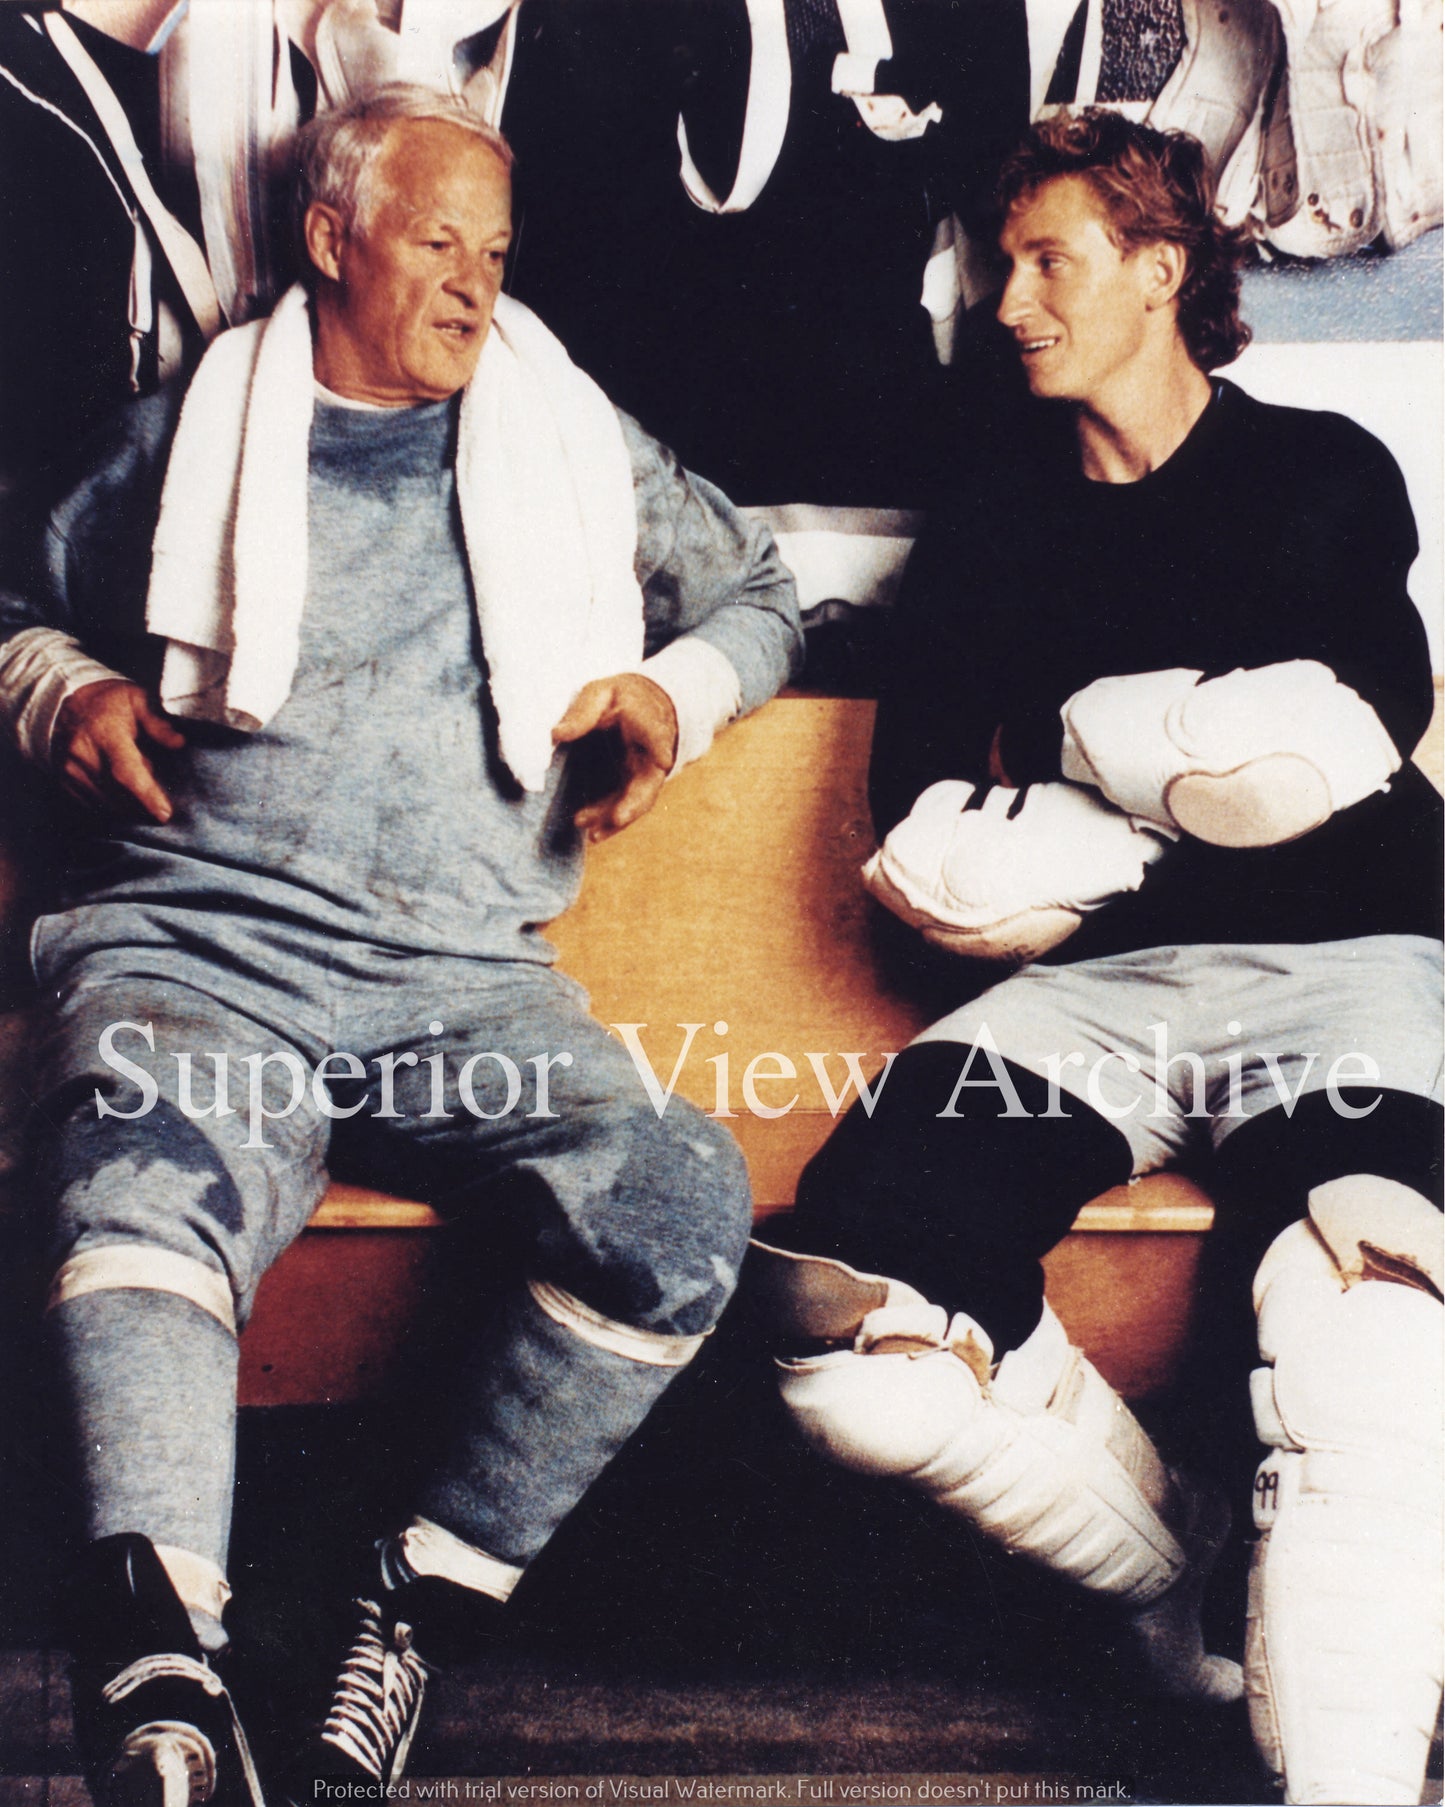 Gordie Howe and Wayne Gretzky